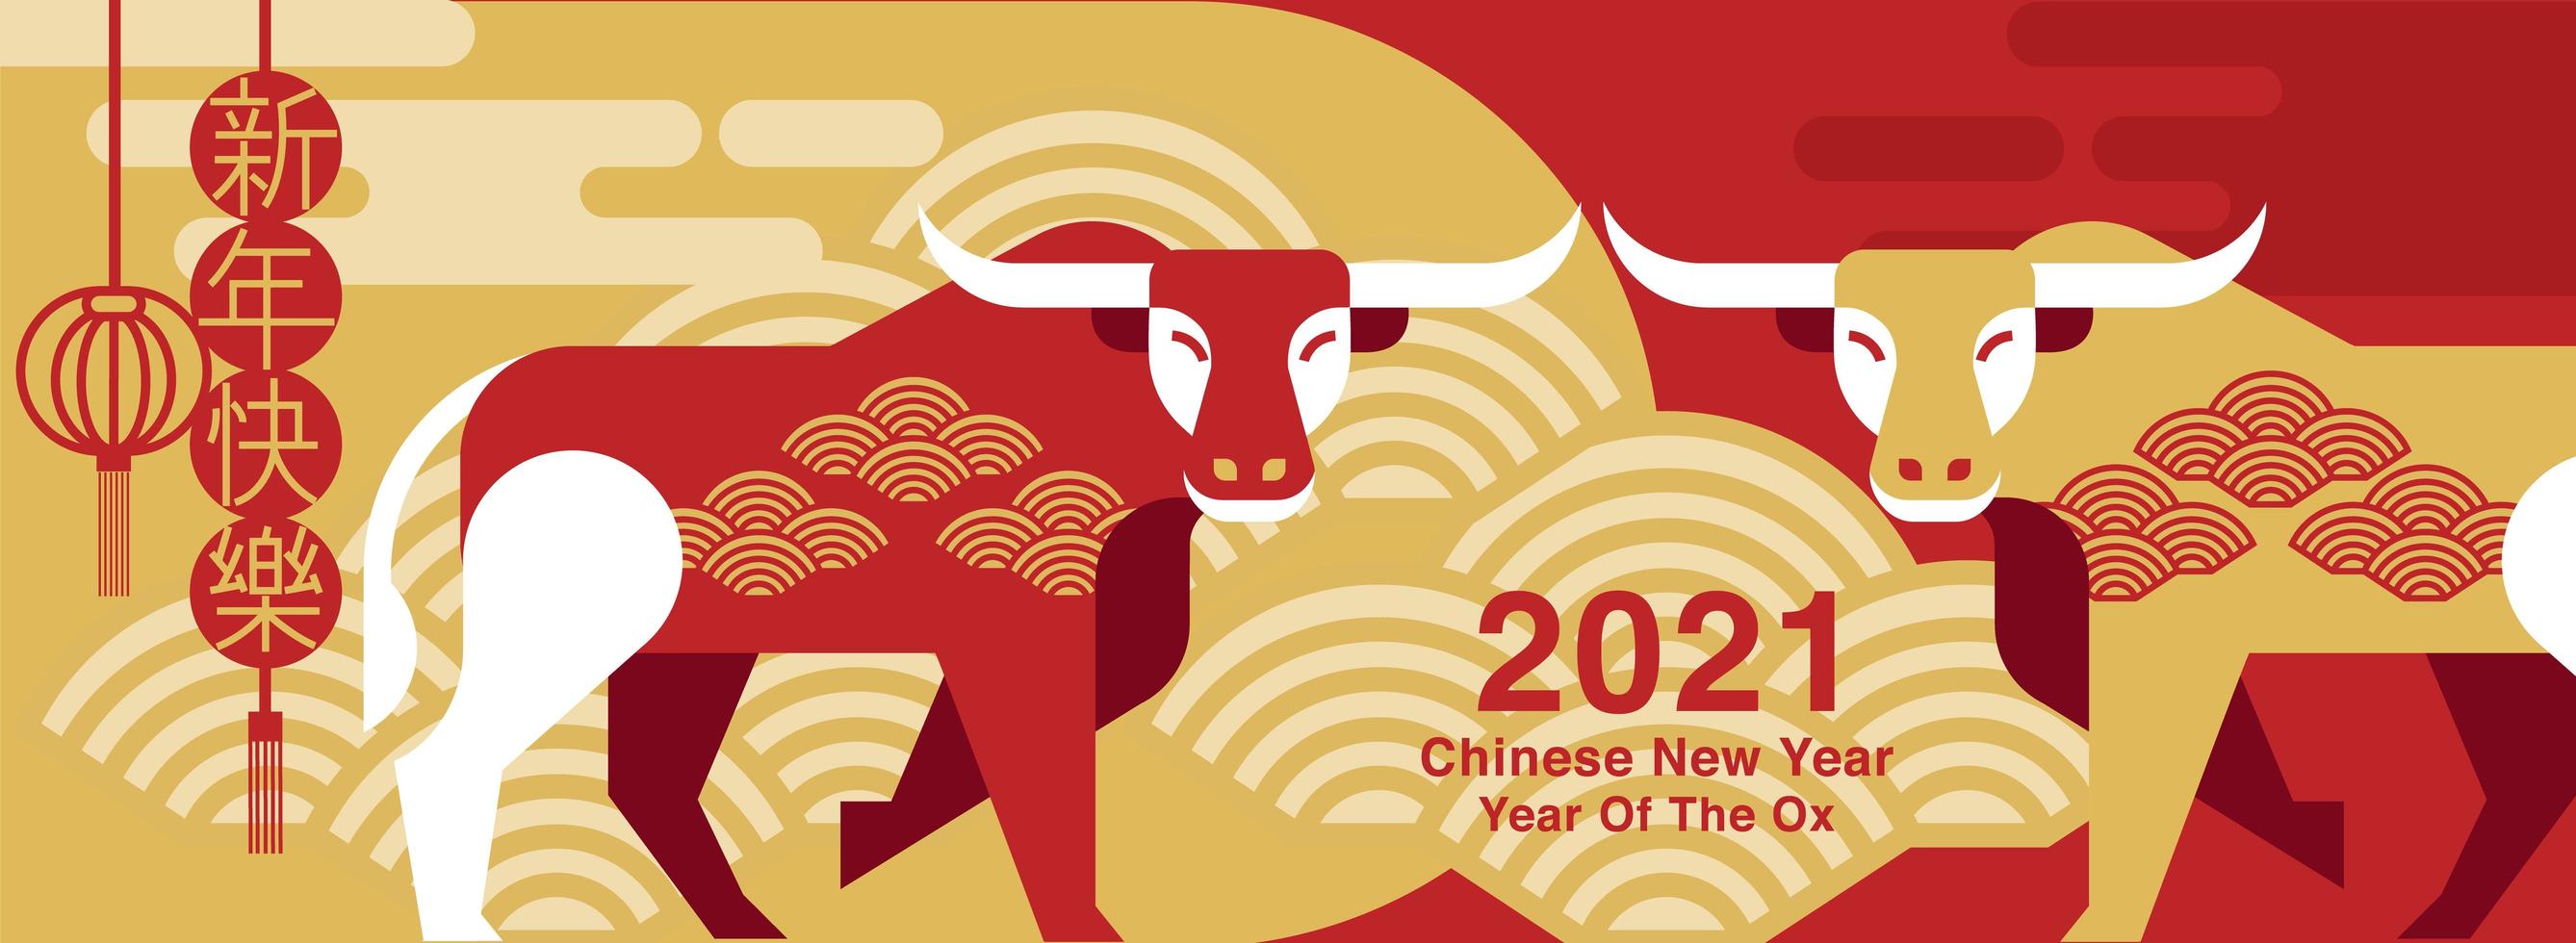 ano novo chinês 2021 design de boi vermelho e dourado vetor